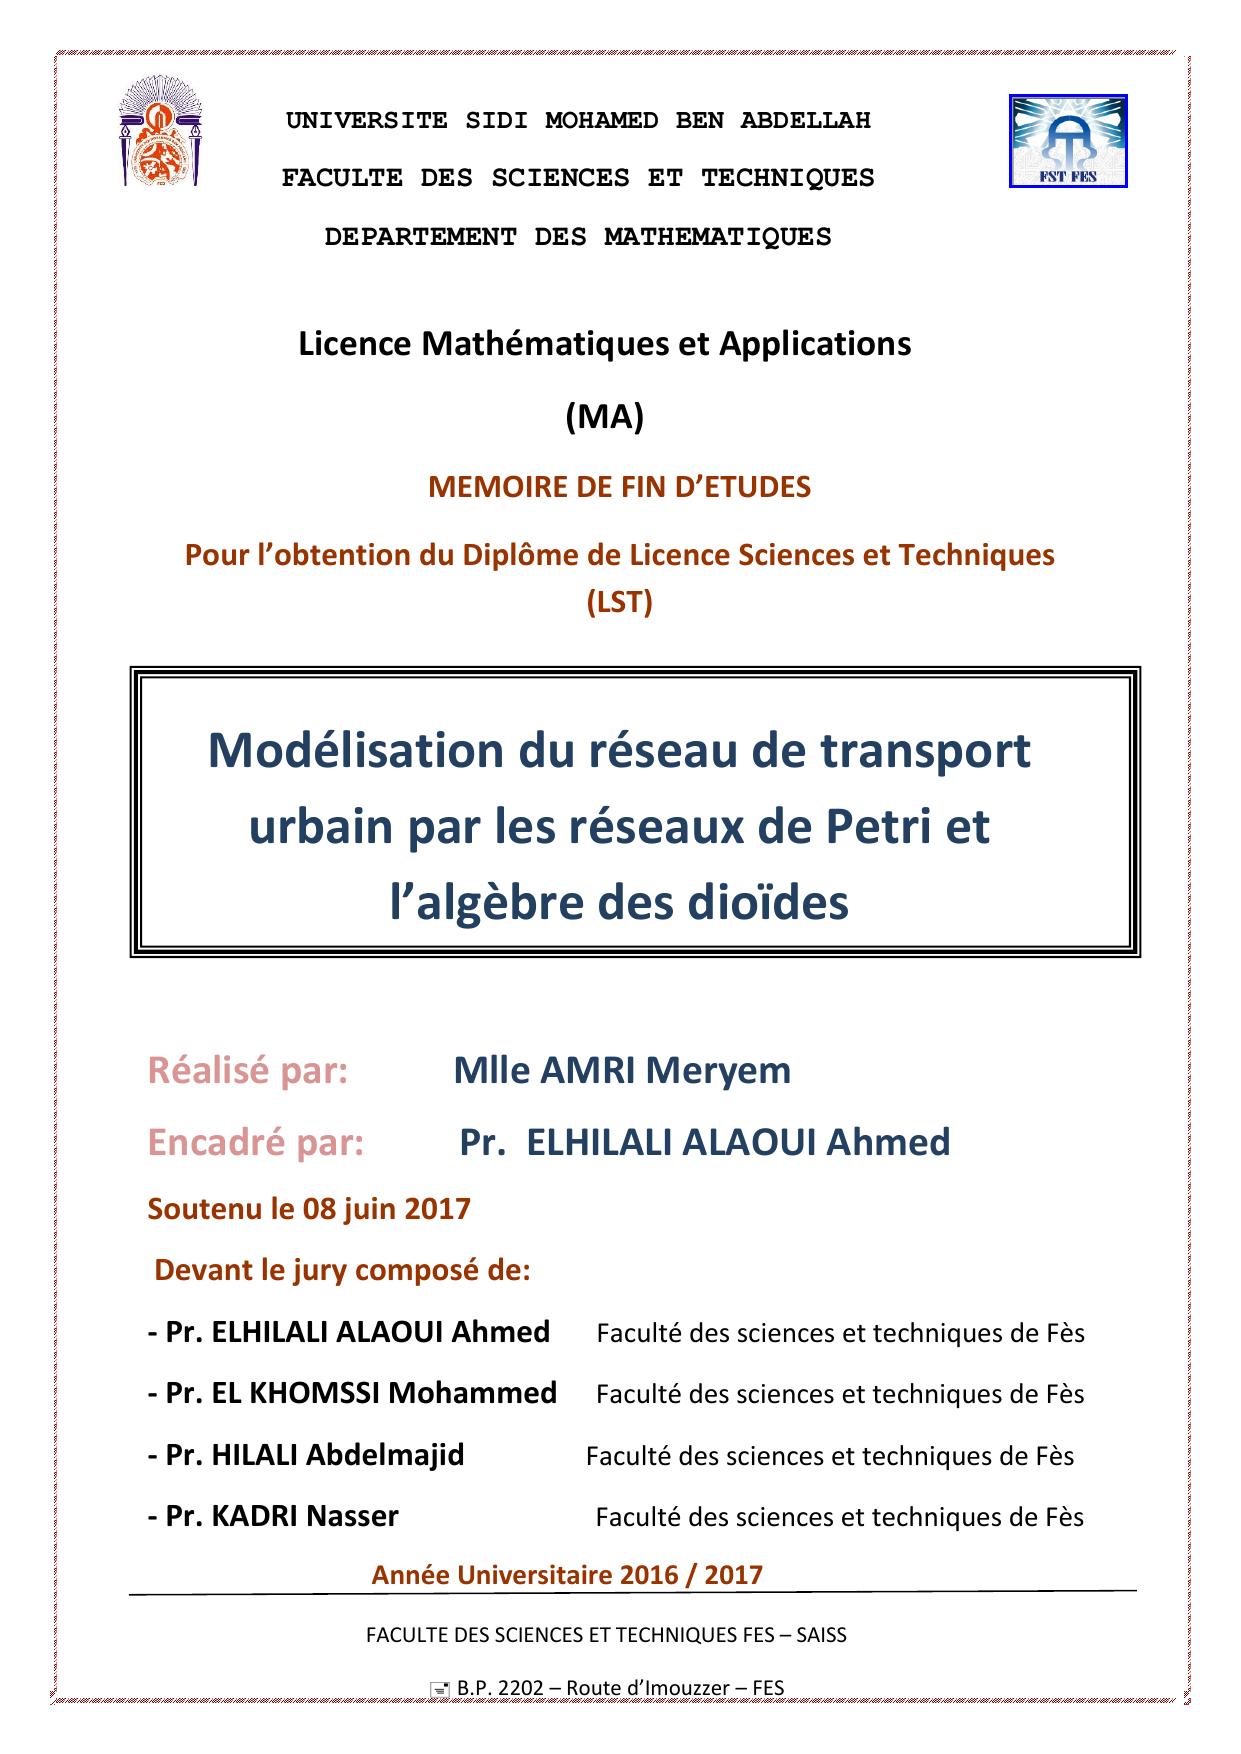 Modélisation du réseau de transport urbain par les réseaux de Petri et l’algèbre des dioïdes